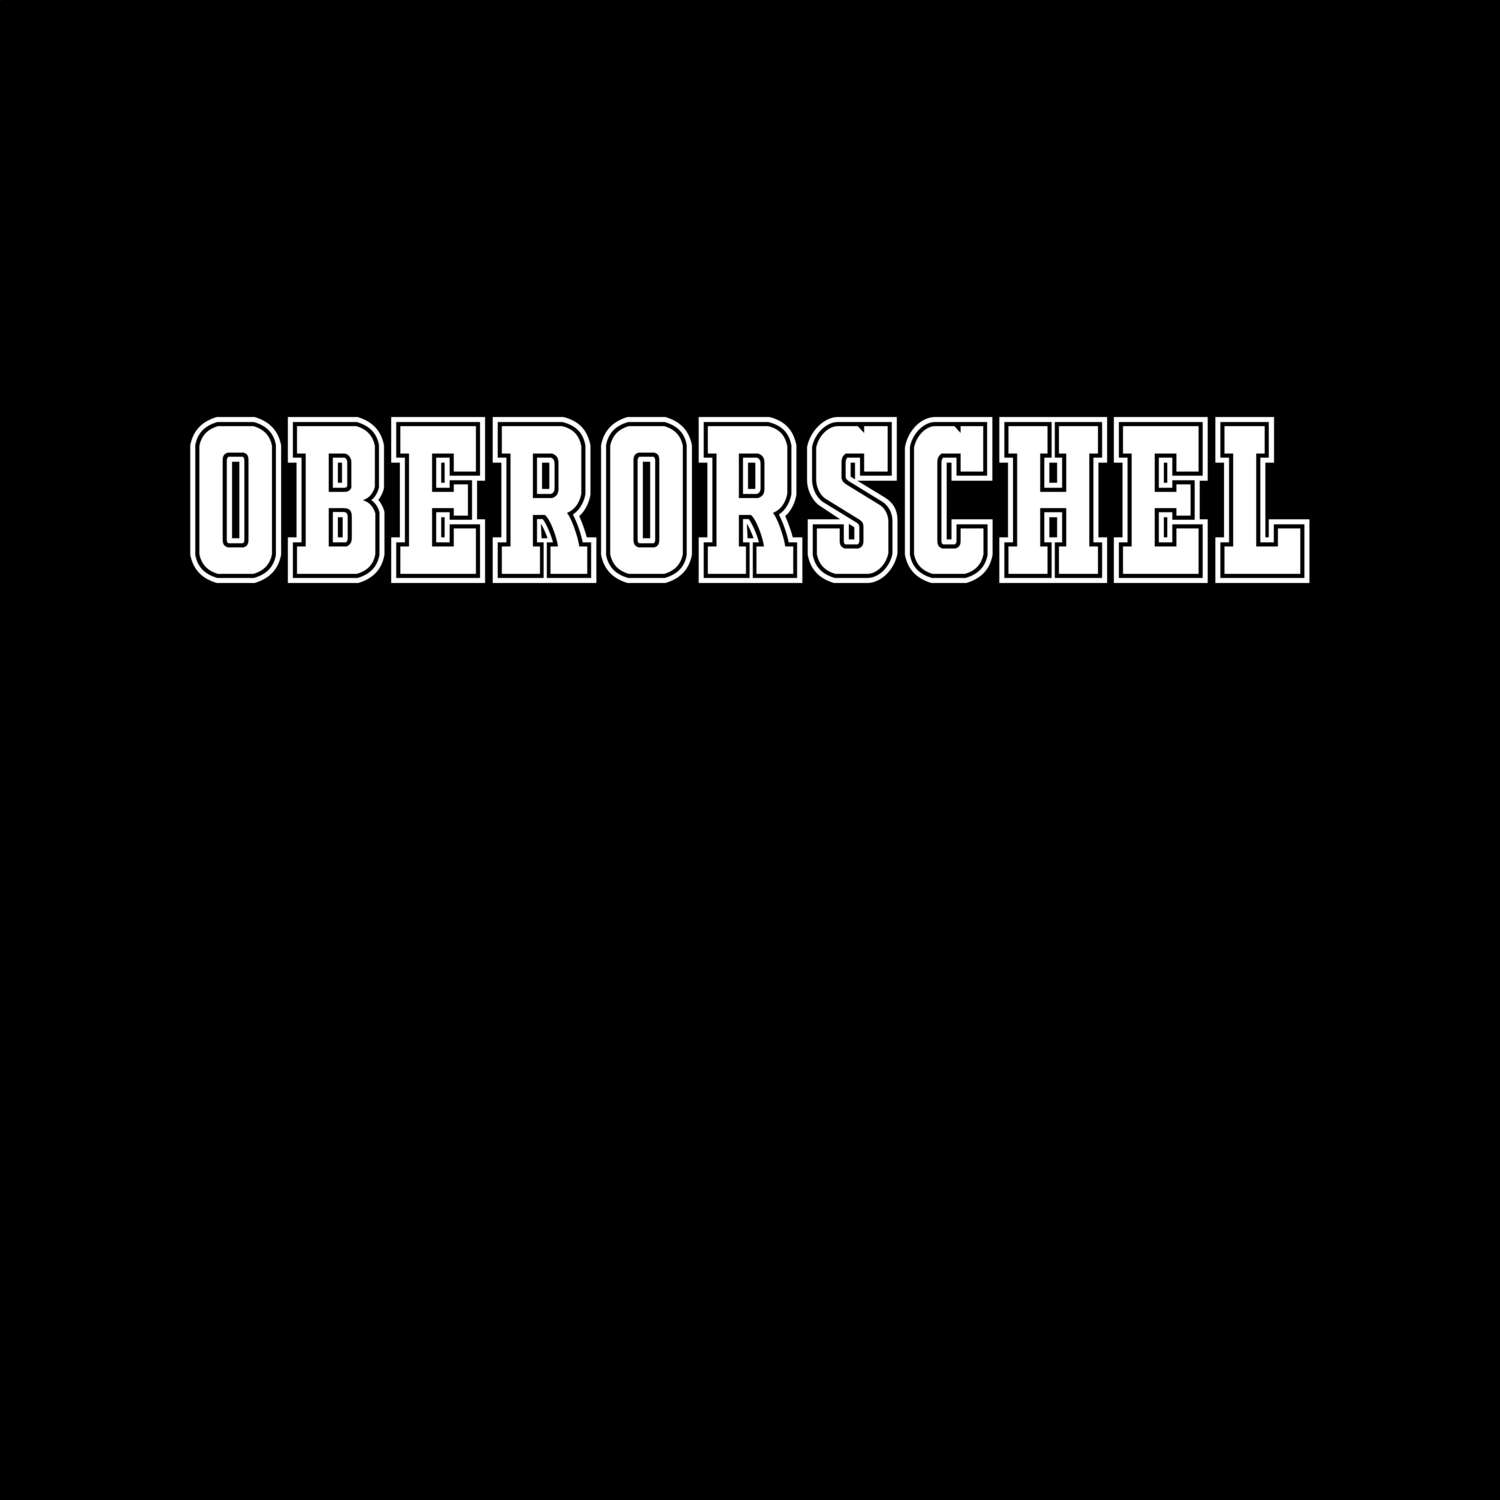 Oberorschel T-Shirt »Classic«